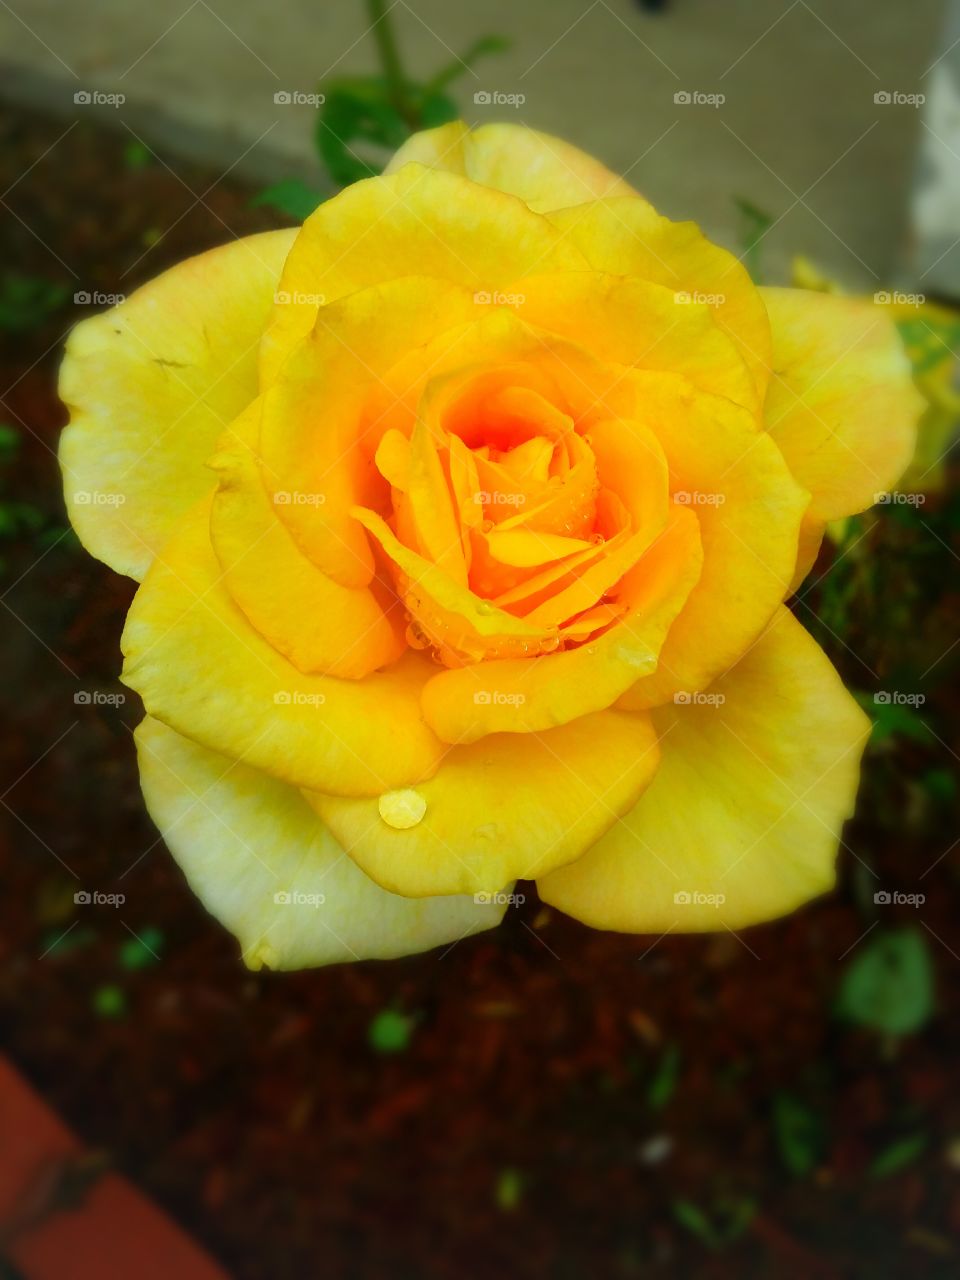 rain kissed yellow rose